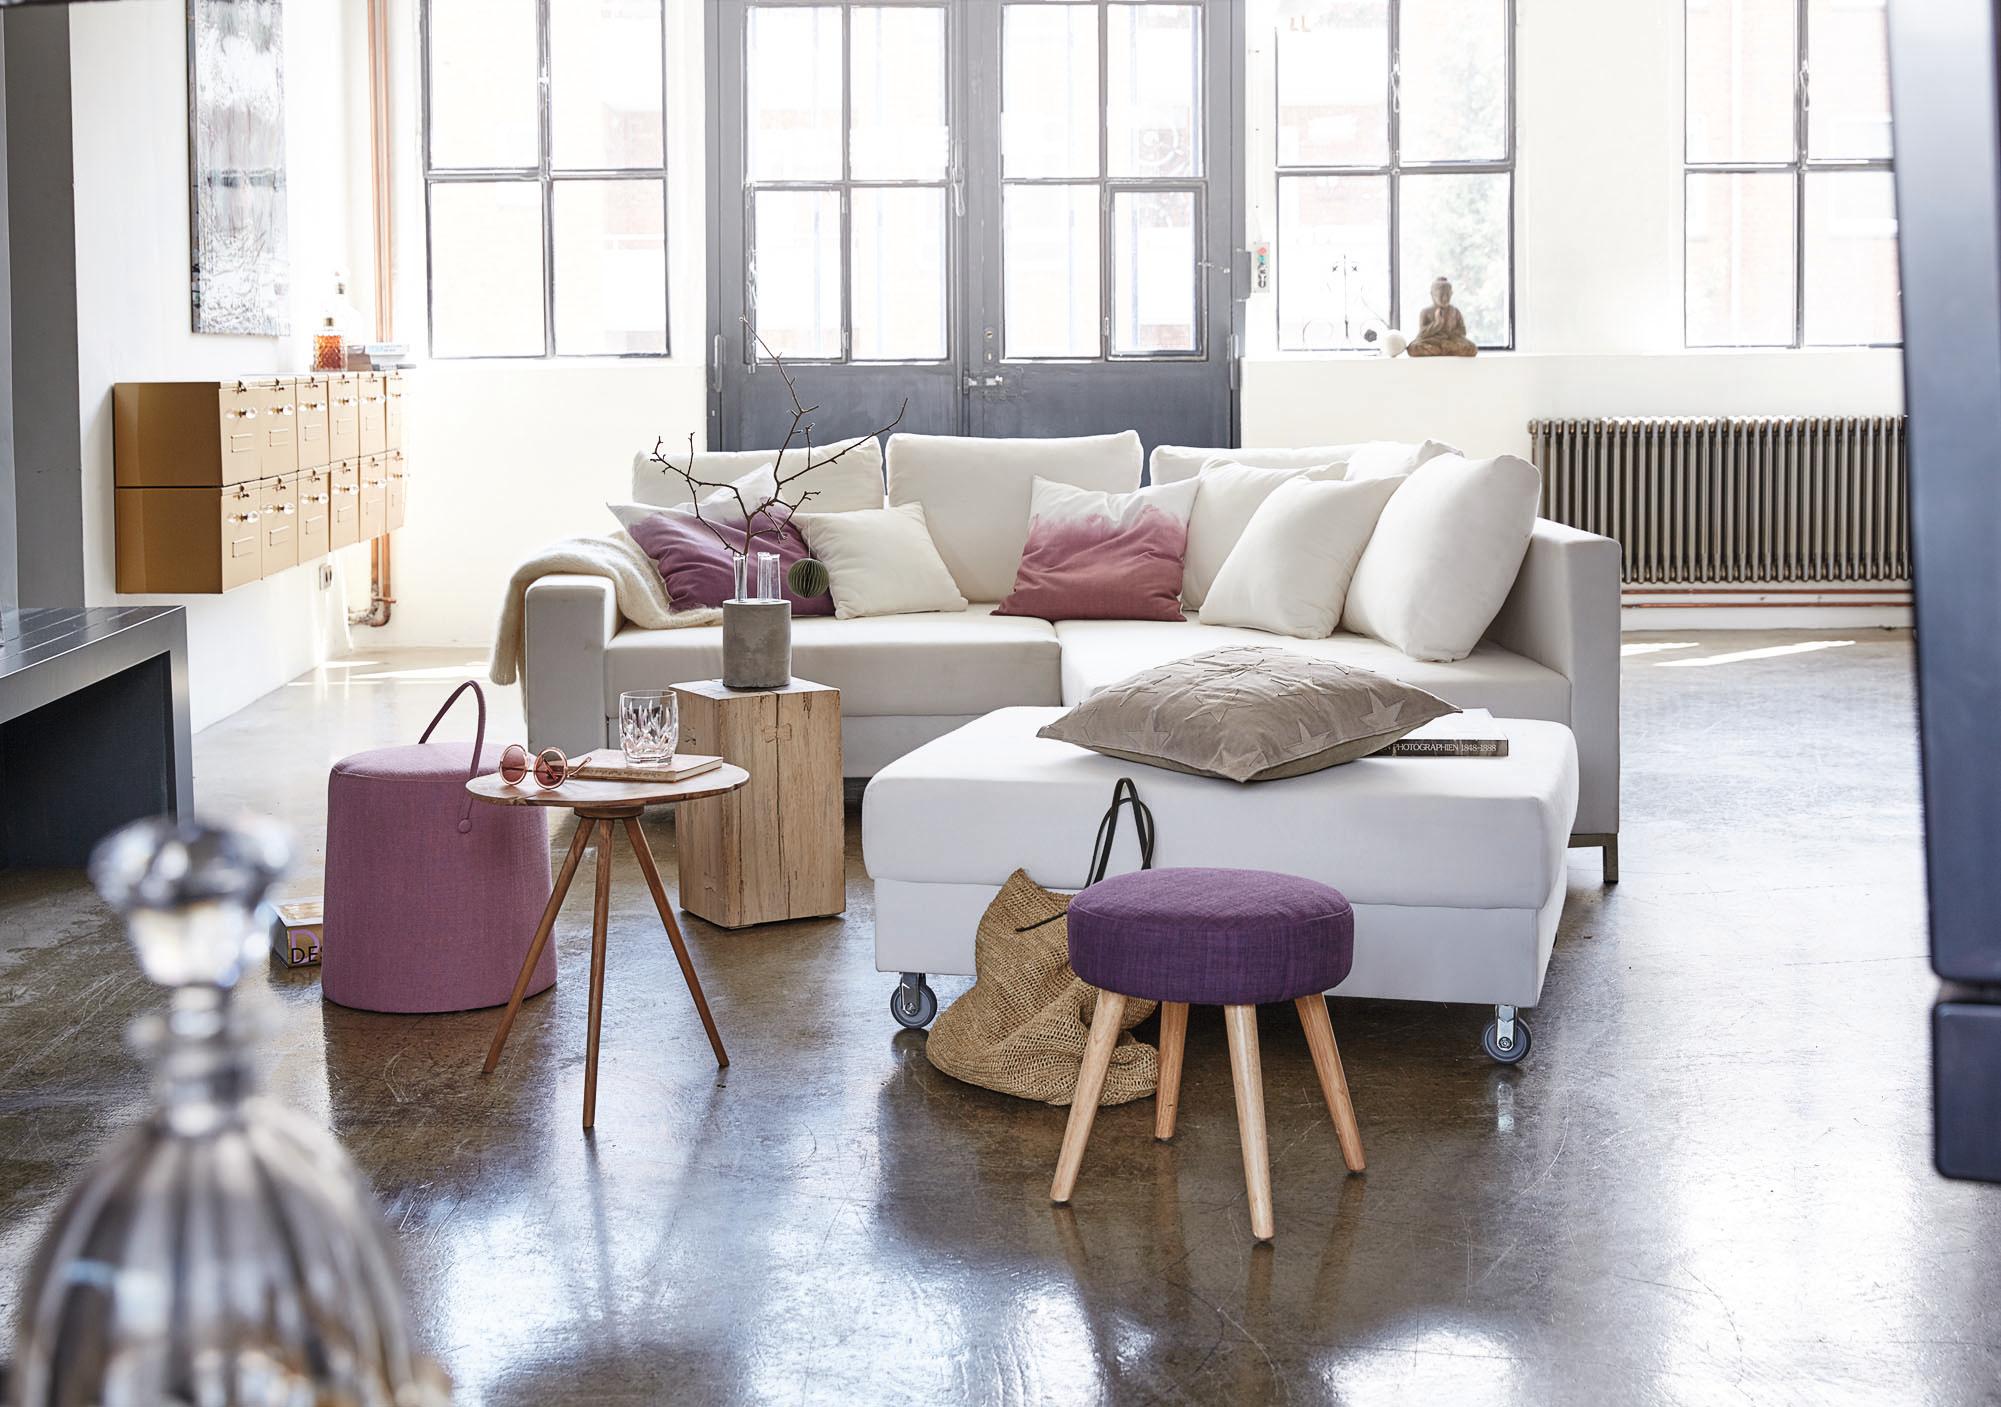 Violette Akzente als Eyecatcher #couchtisch #hocker #wohnzimmer #kommode #sofa #zimmergestaltung ©Impressionen